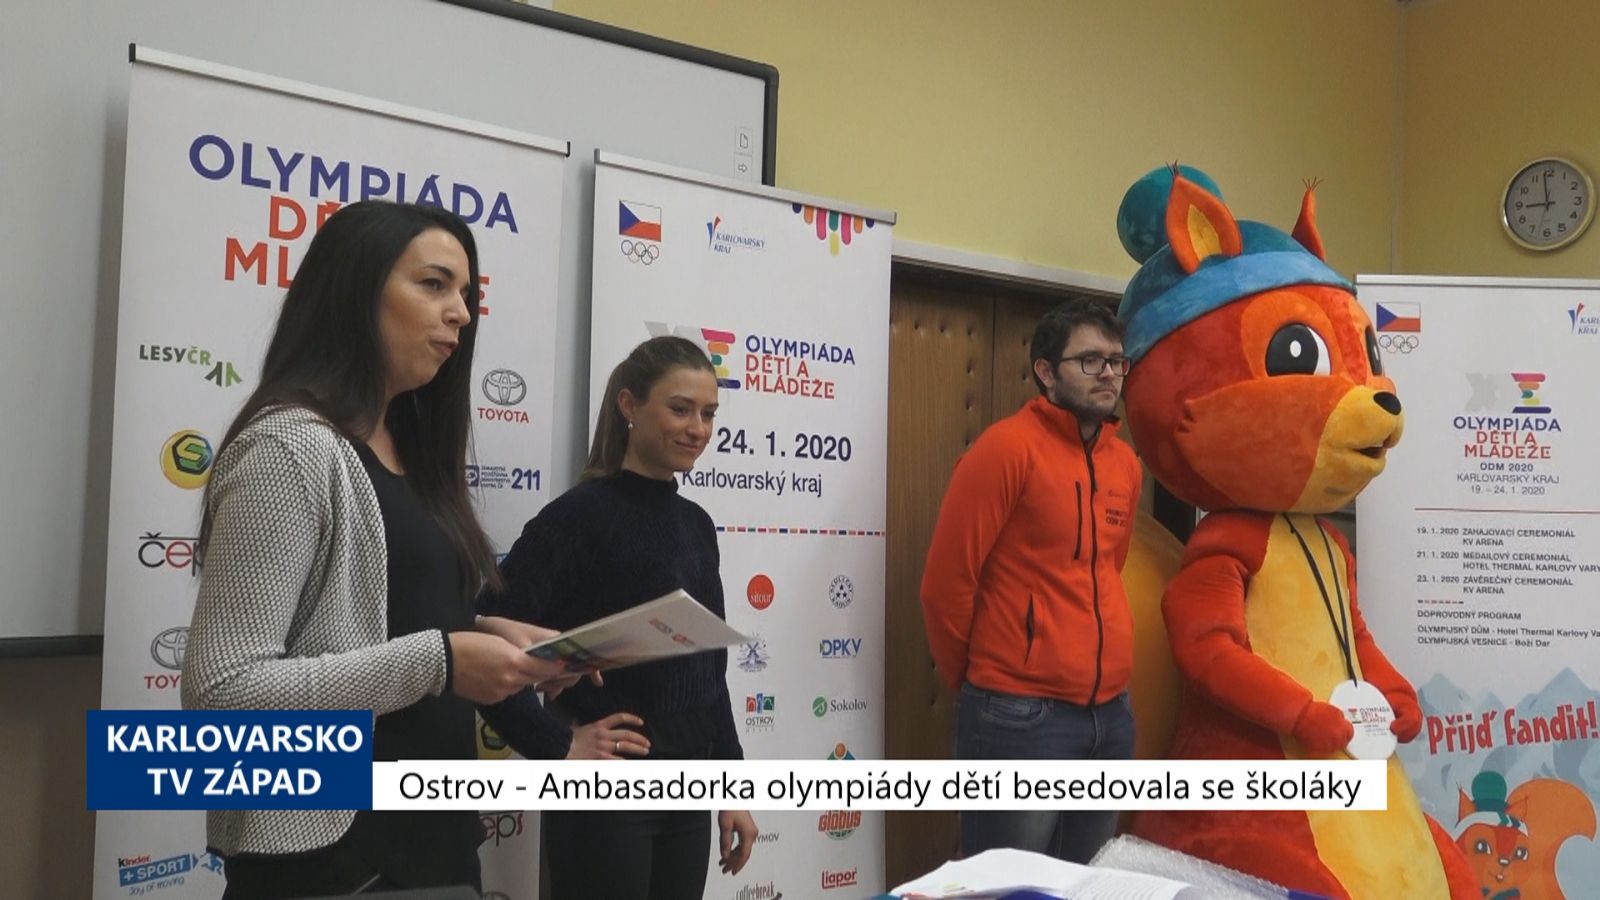 Ostrov: Ambasadorka olympiády dětí Nováková besedovala se školáky (TV Západ)